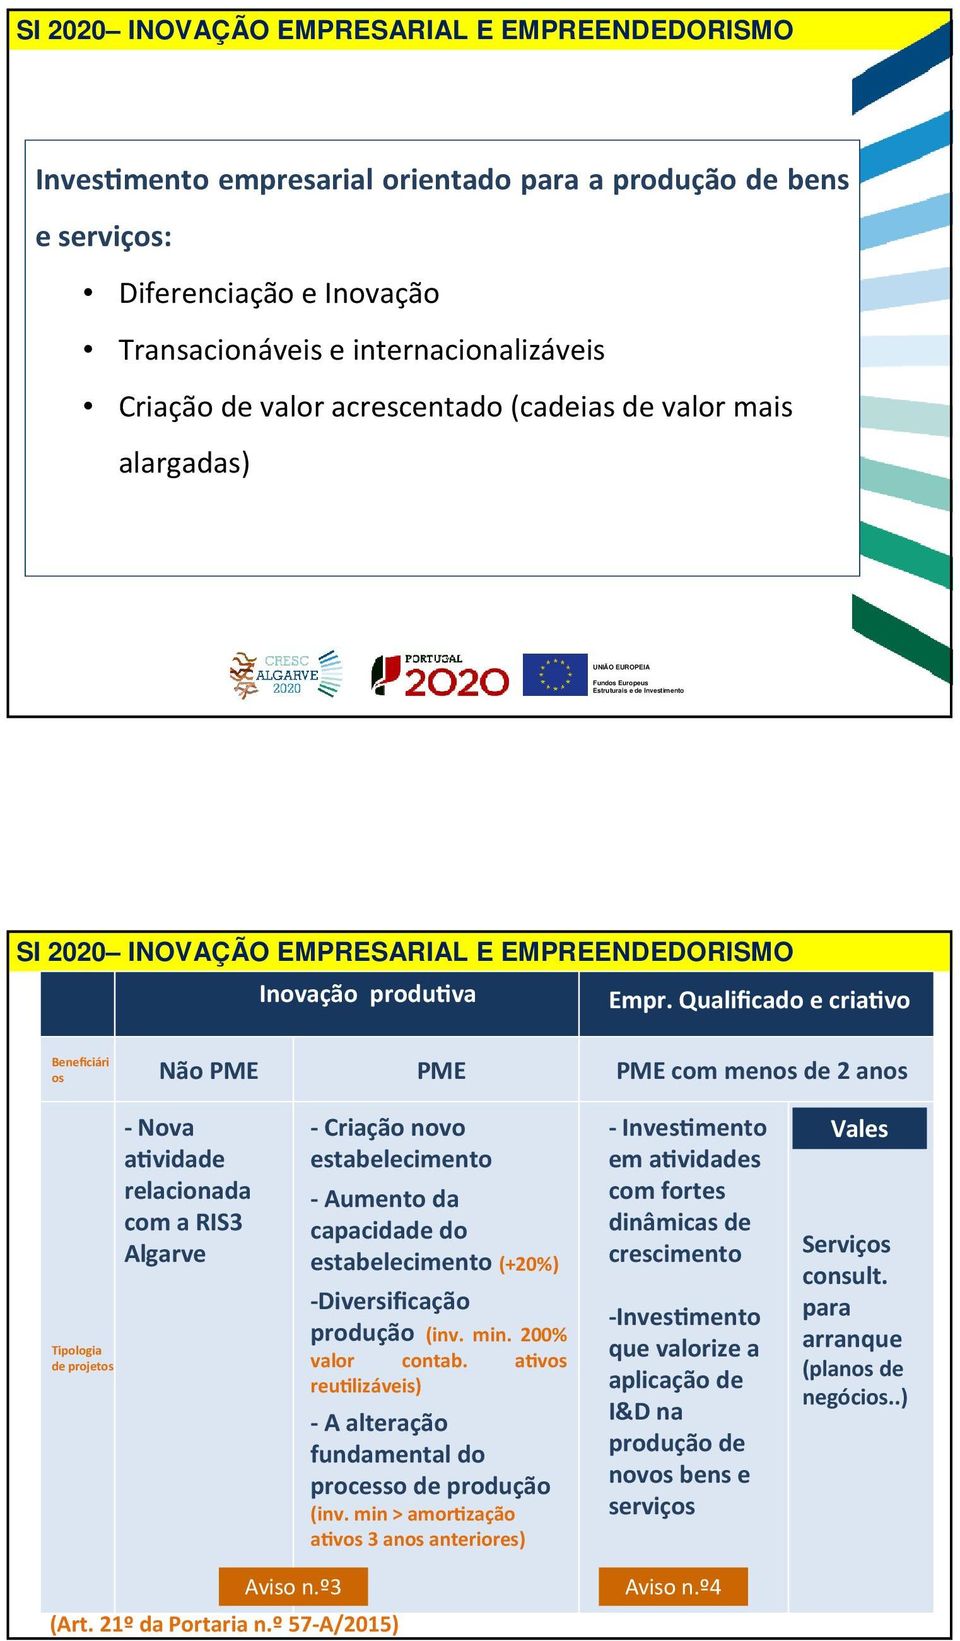 Qualificado e criavo Beneficiári os Não PME PME PME com menos de 2 anos Tipologia de projetos - Nova avidade relacionada com a RIS3 Algarve - Criação novo estabelecimento - Aumento da capacidade do